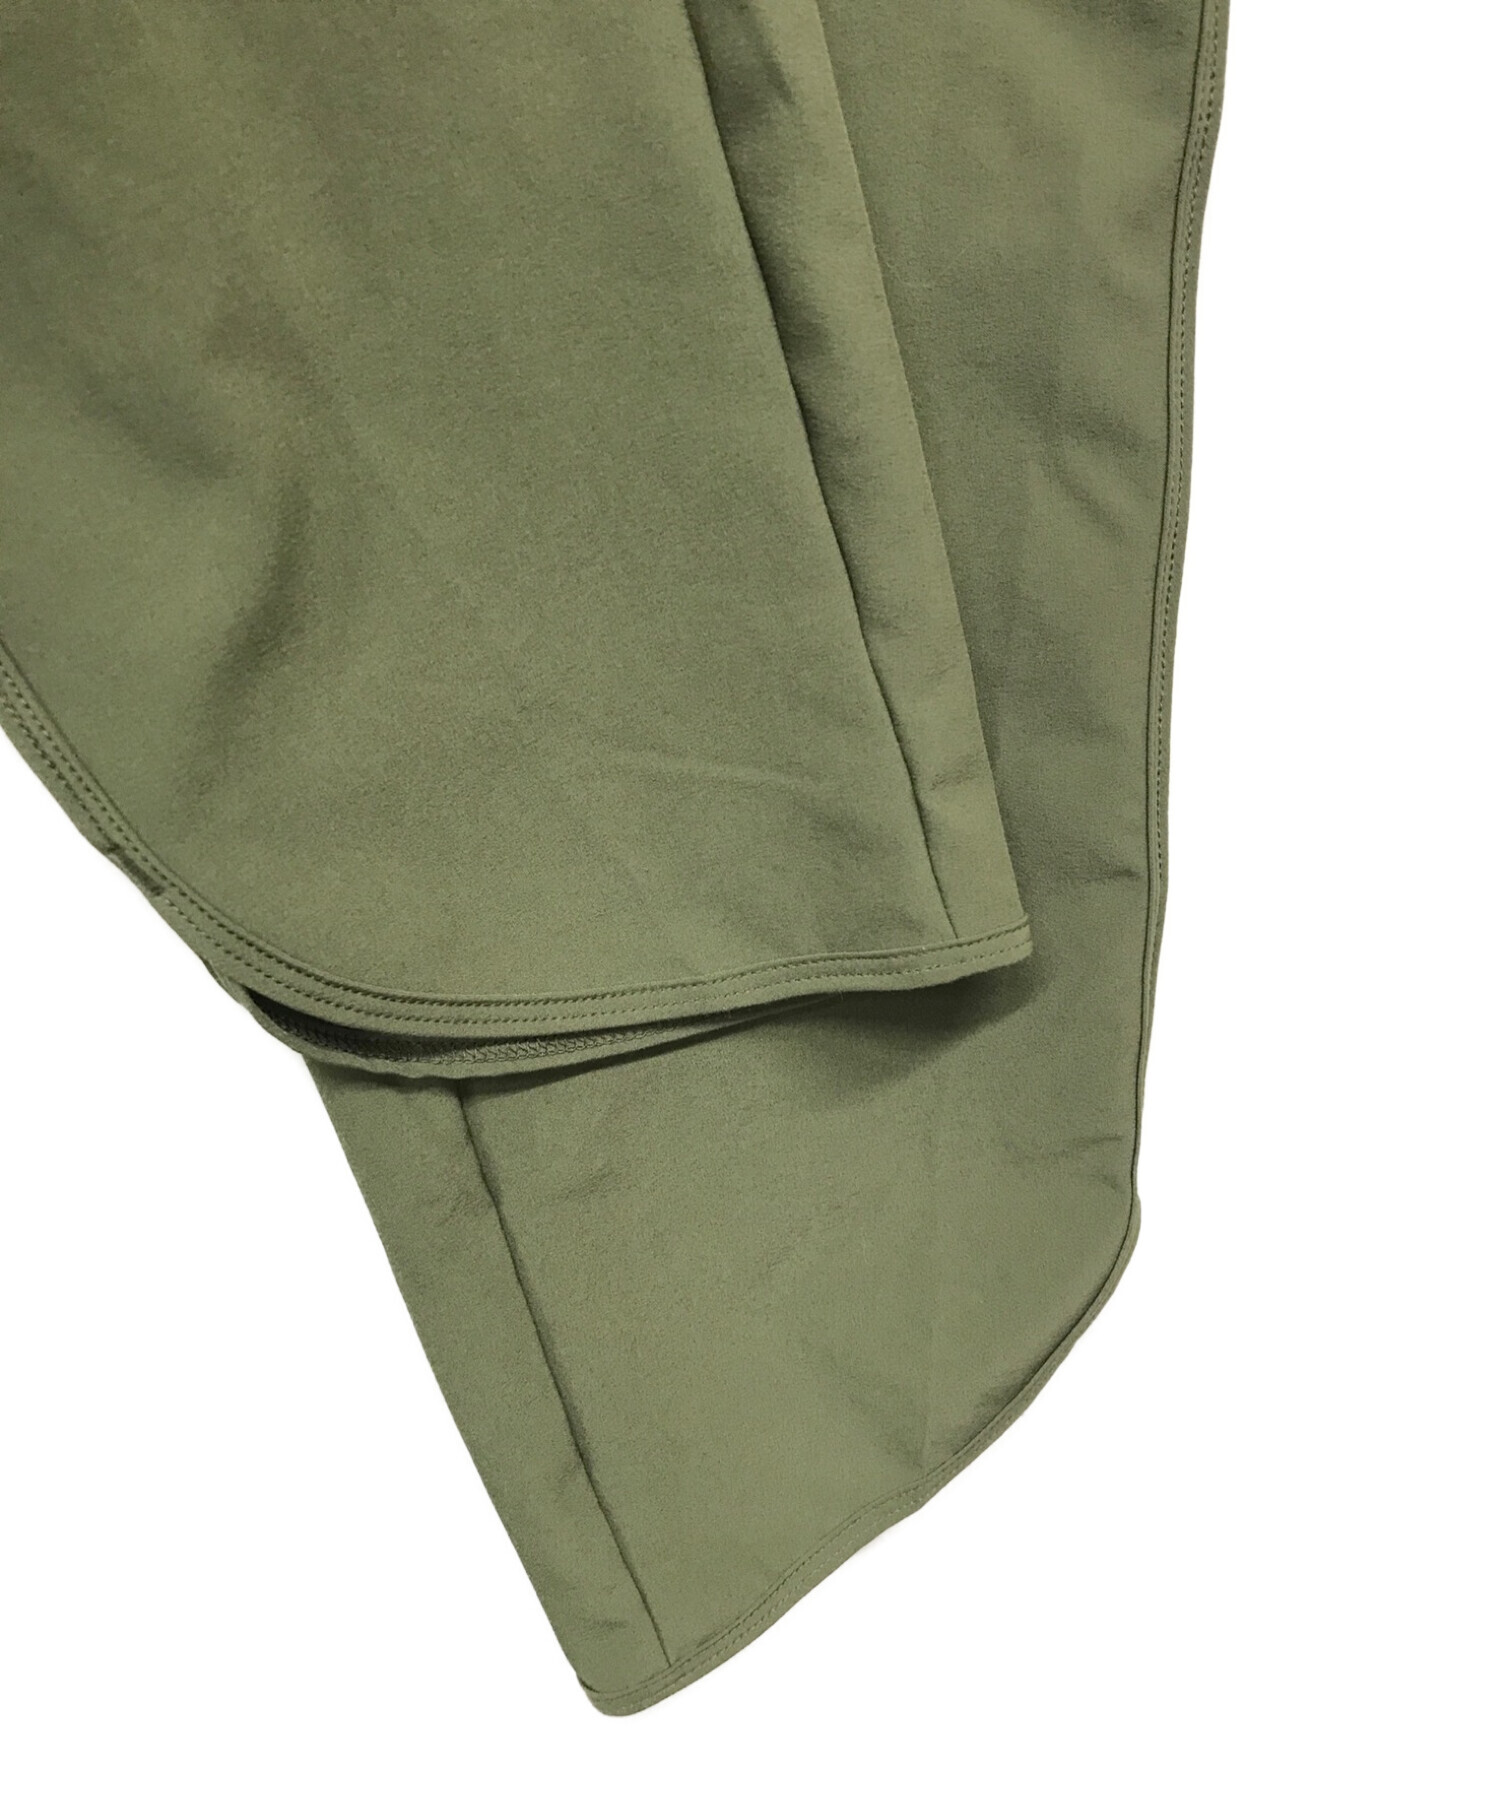 パタゴニア フリートウィズロンパー Sサイズ グリーン - ファッション